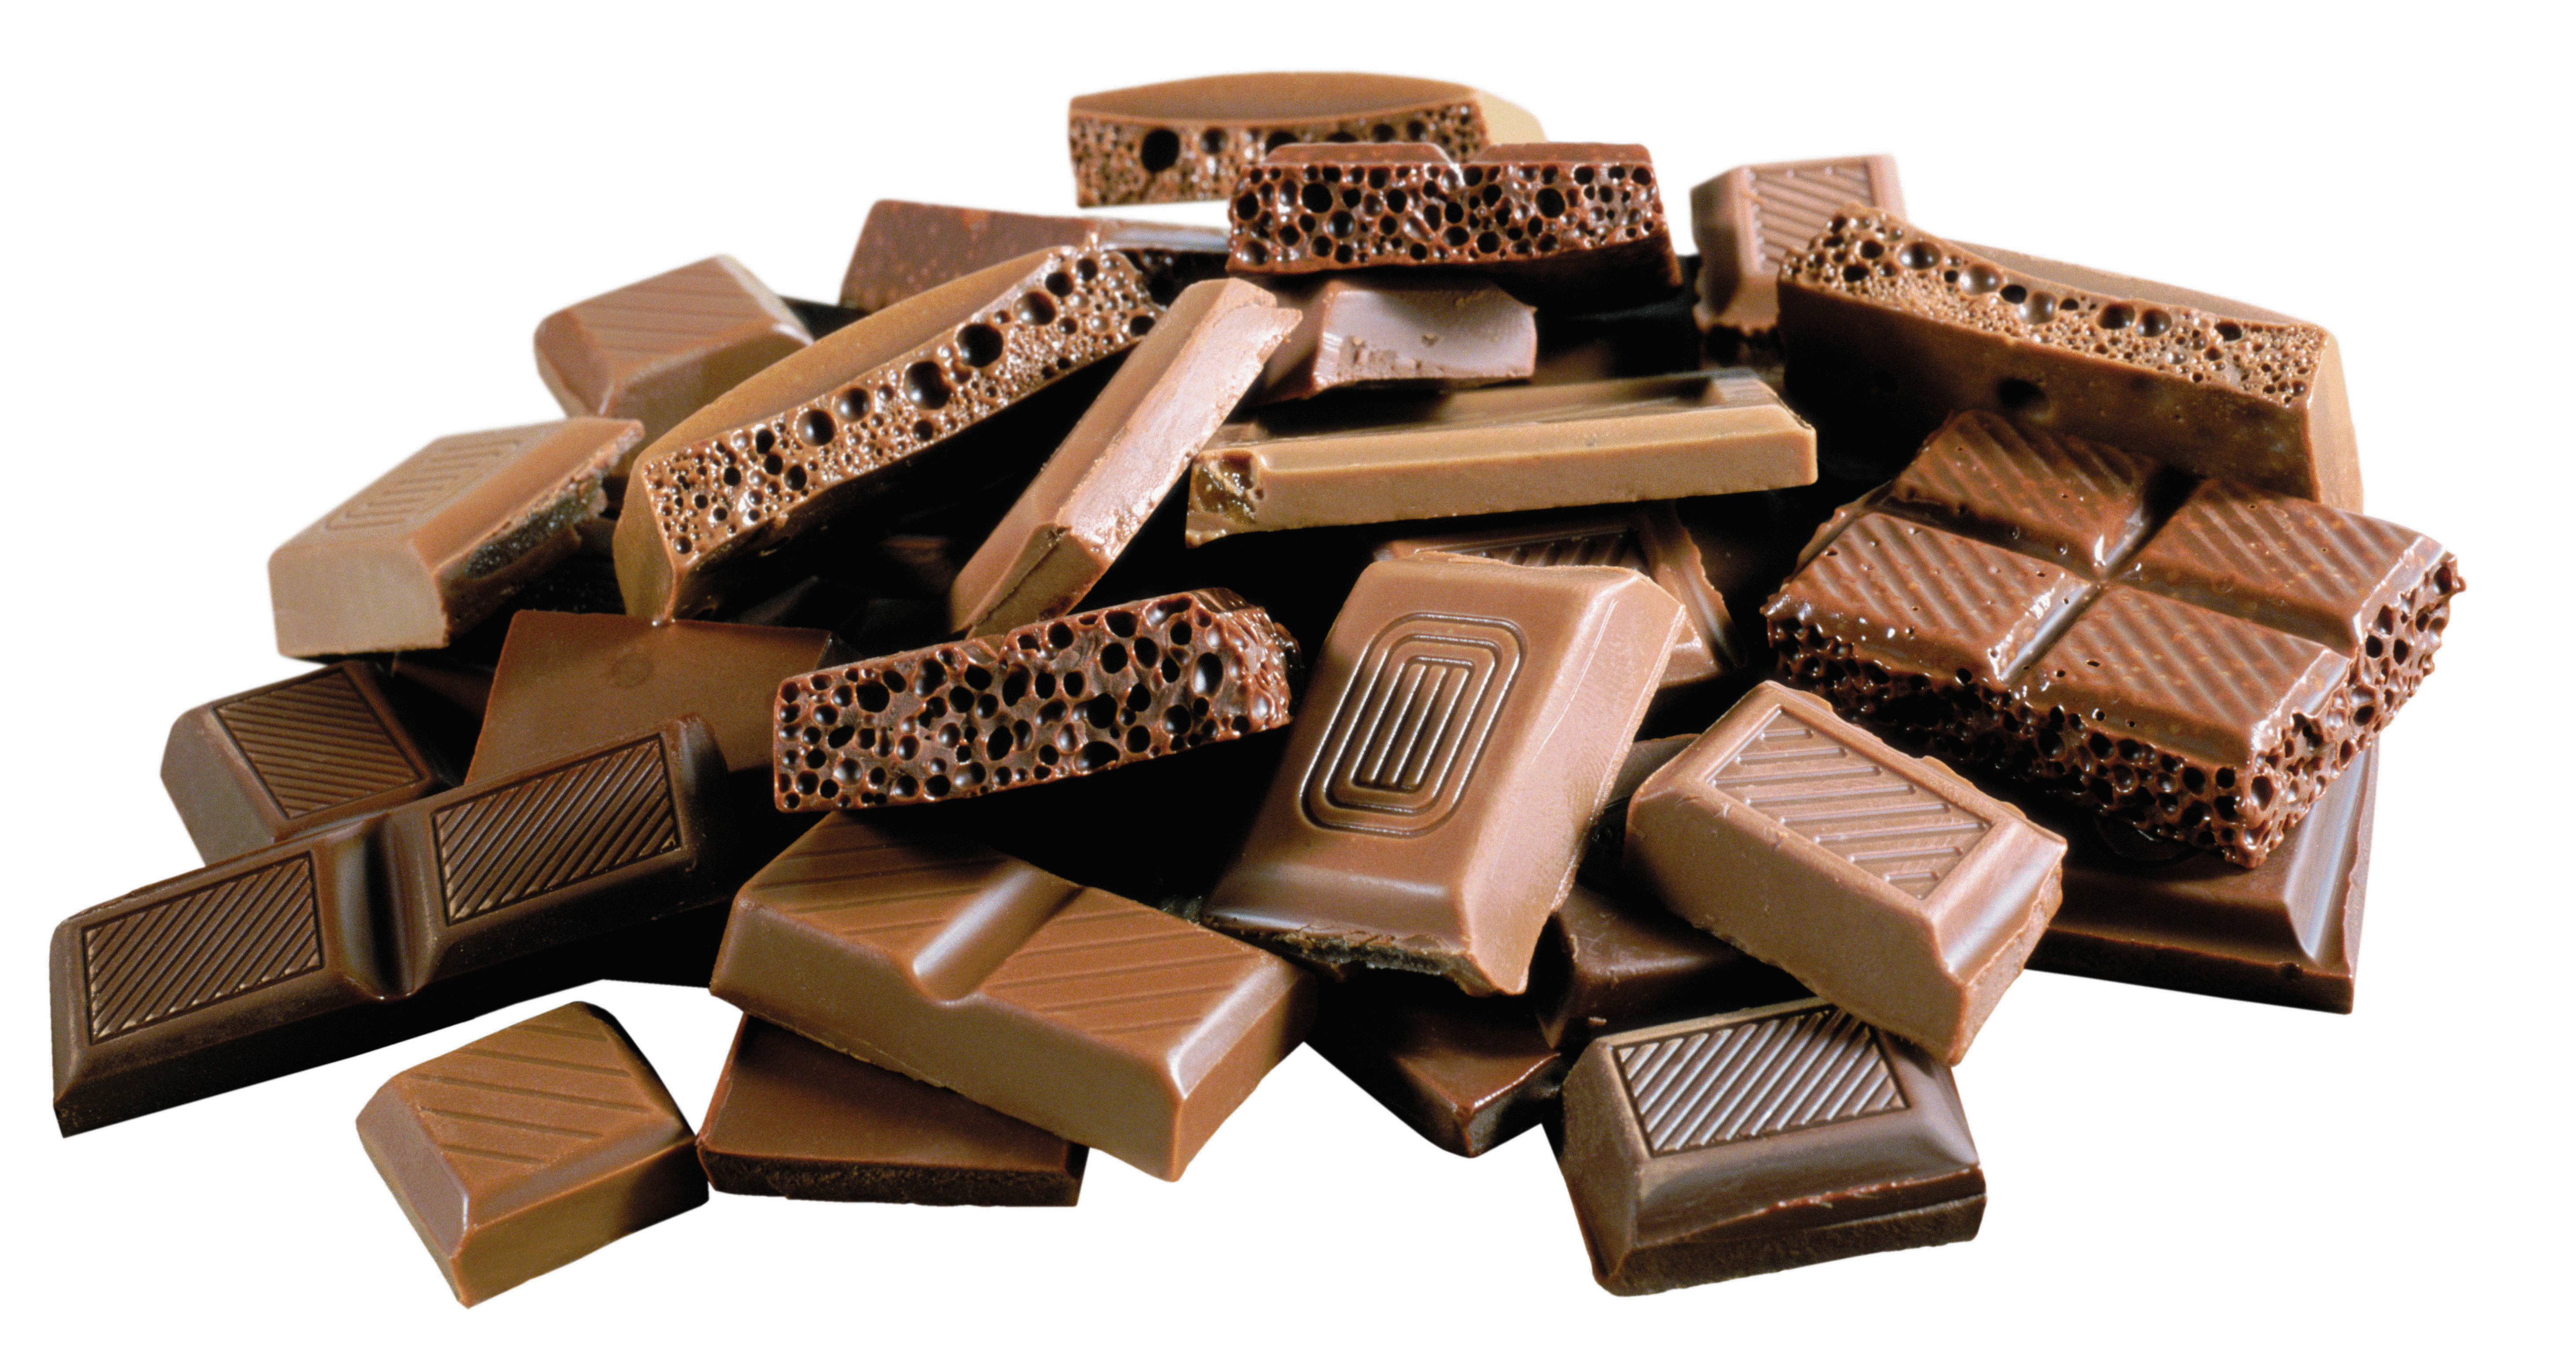 Группа ученых изобрела безопасный шоколад для здоровья